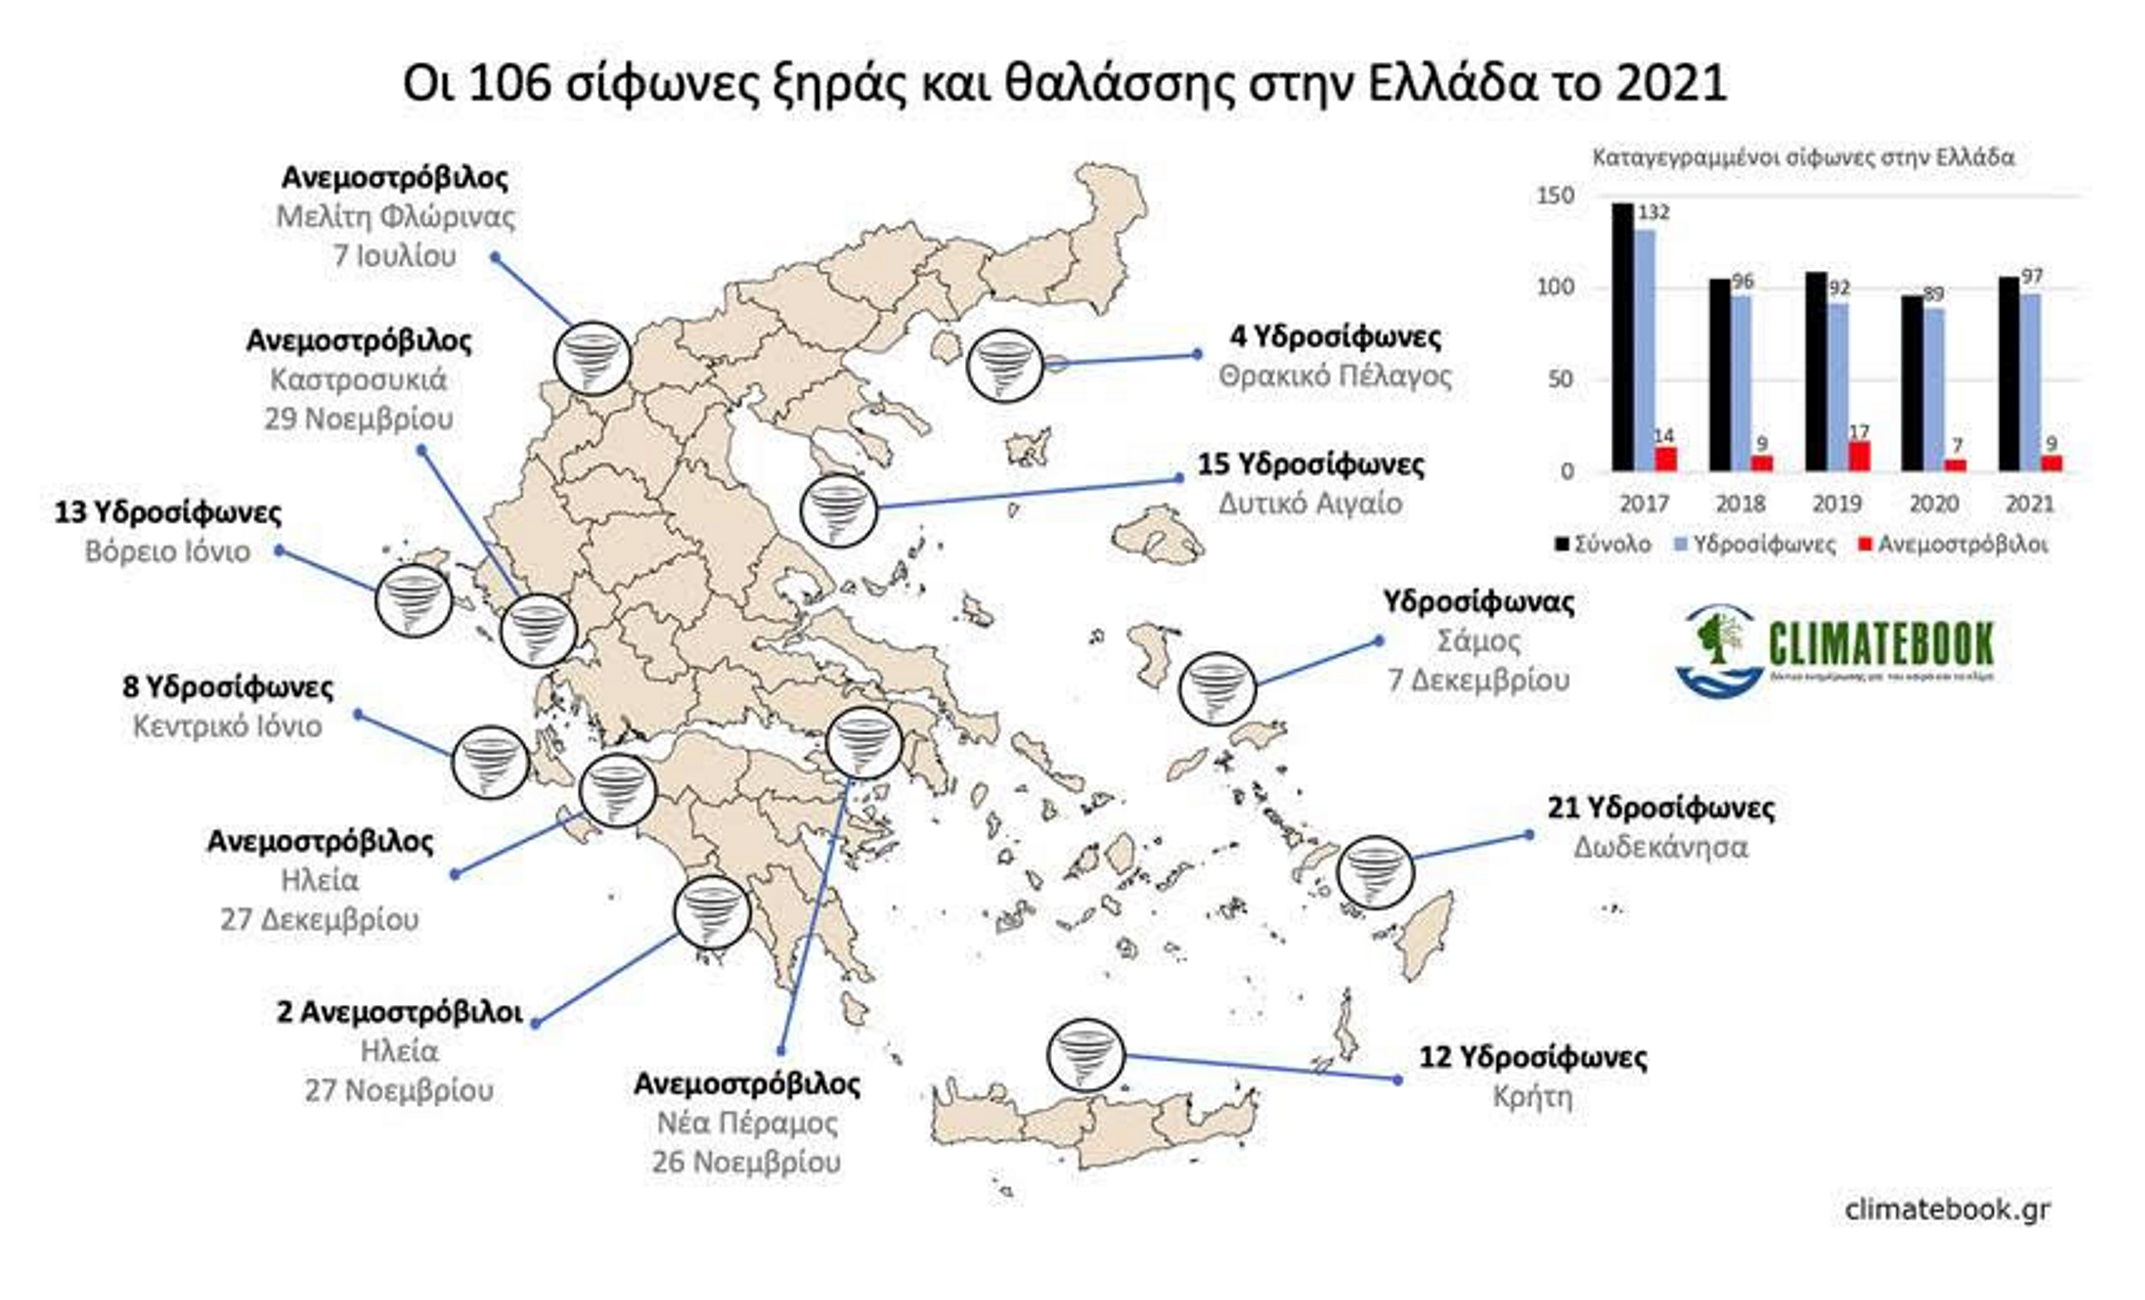 Καιρός: 97 υδροσίφωνες και 9 ανεμοστρόβιλοι καταγράφηκαν στην Ελλάδα μέσα στο 2021